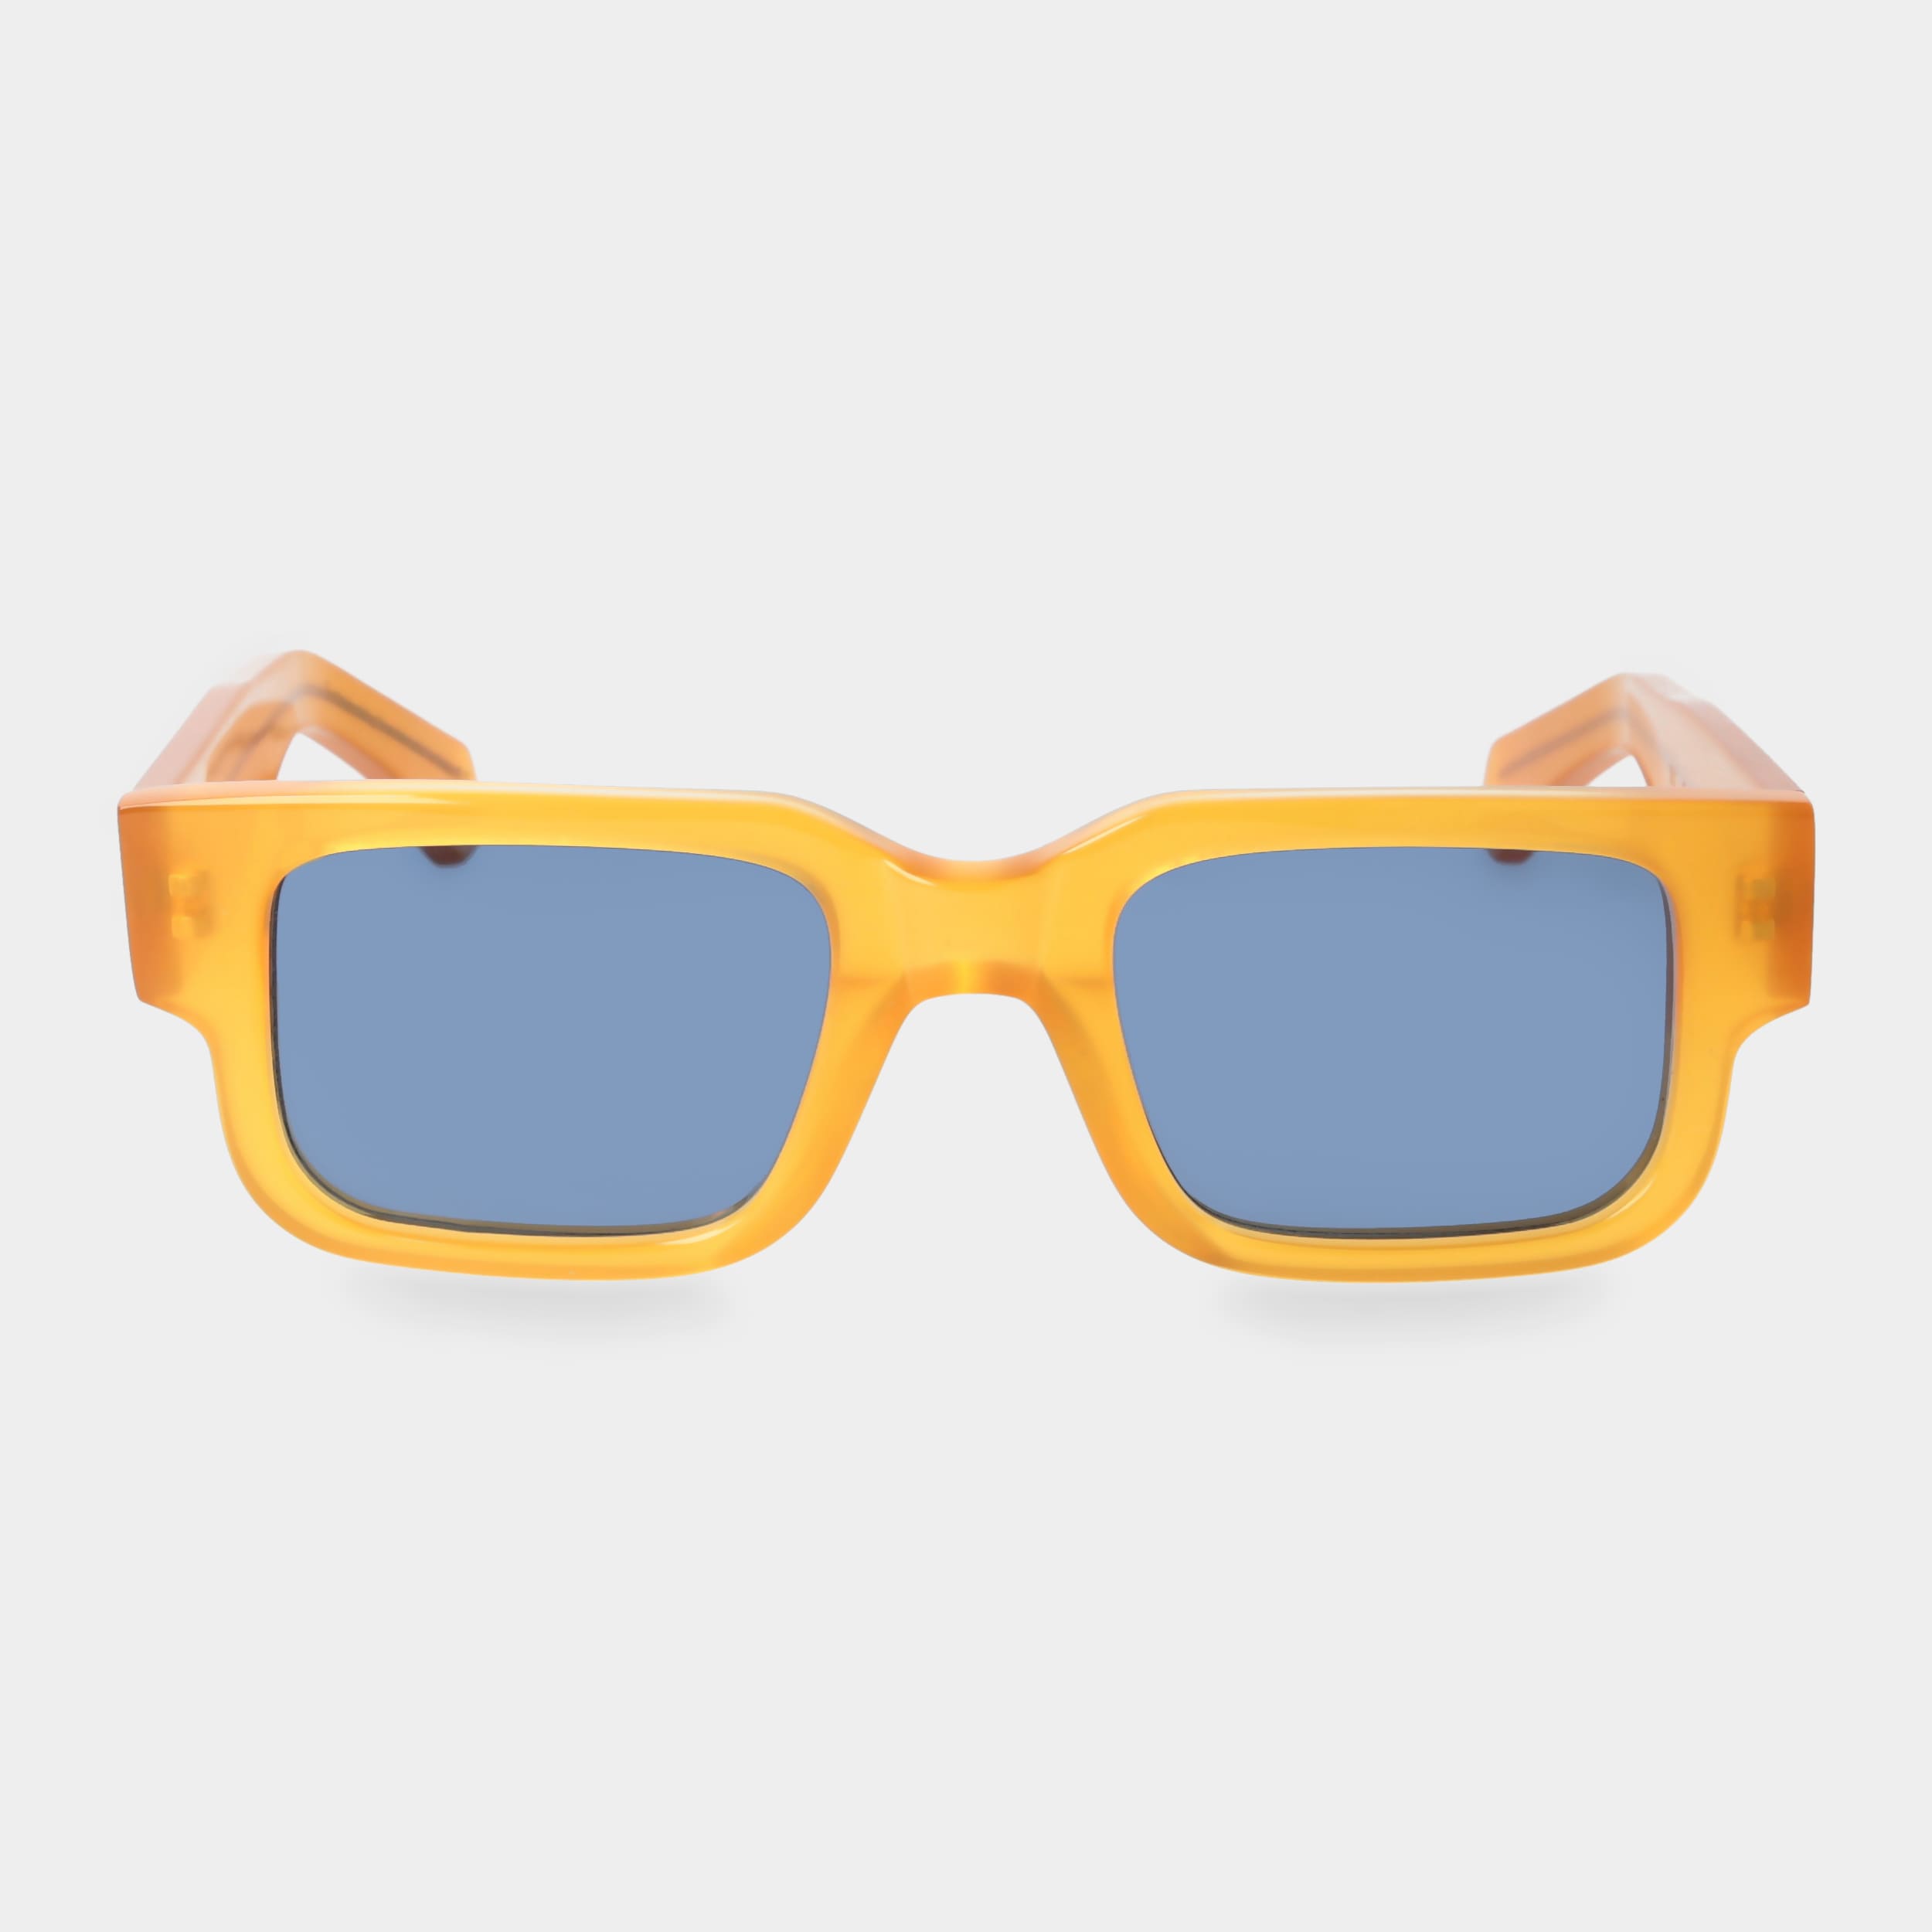 sunglasses-silk-eco-honey-blue-sustainable-tbd-eyewear-front